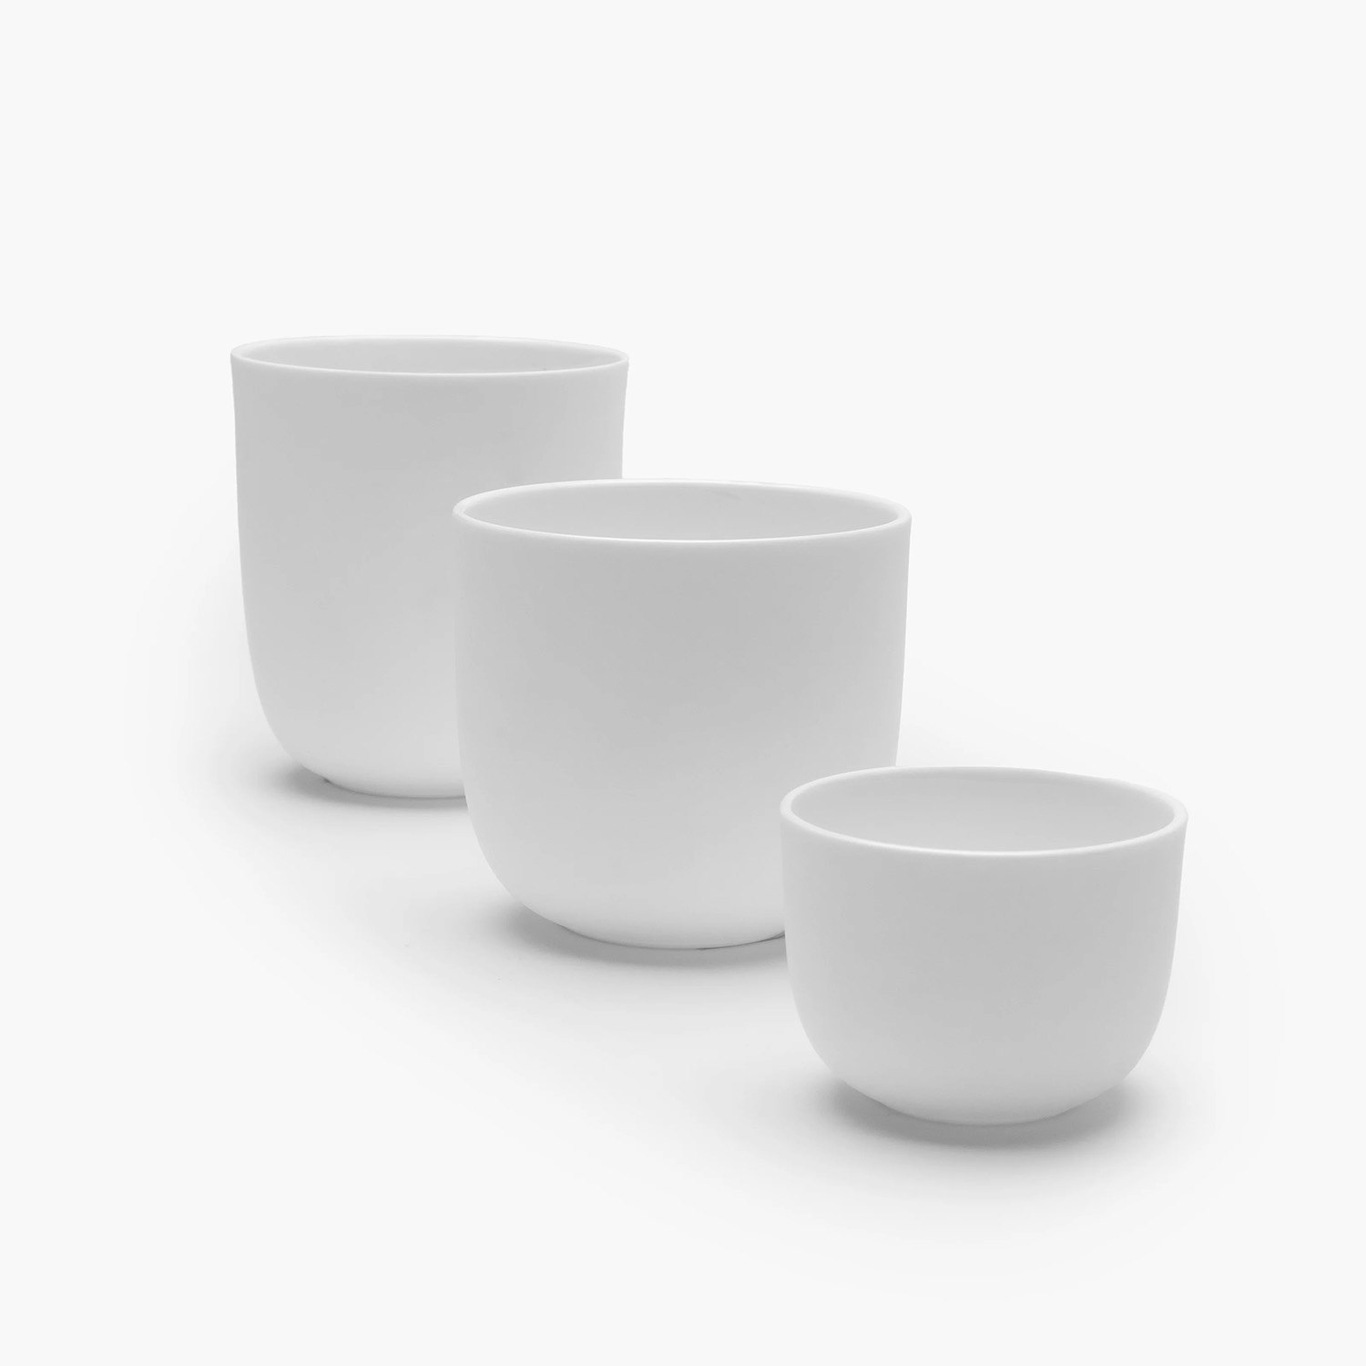 https://royaldesign.com/image/2/serax-espresso-cup-w-o-handle-glazed-white-1?w=800&quality=80